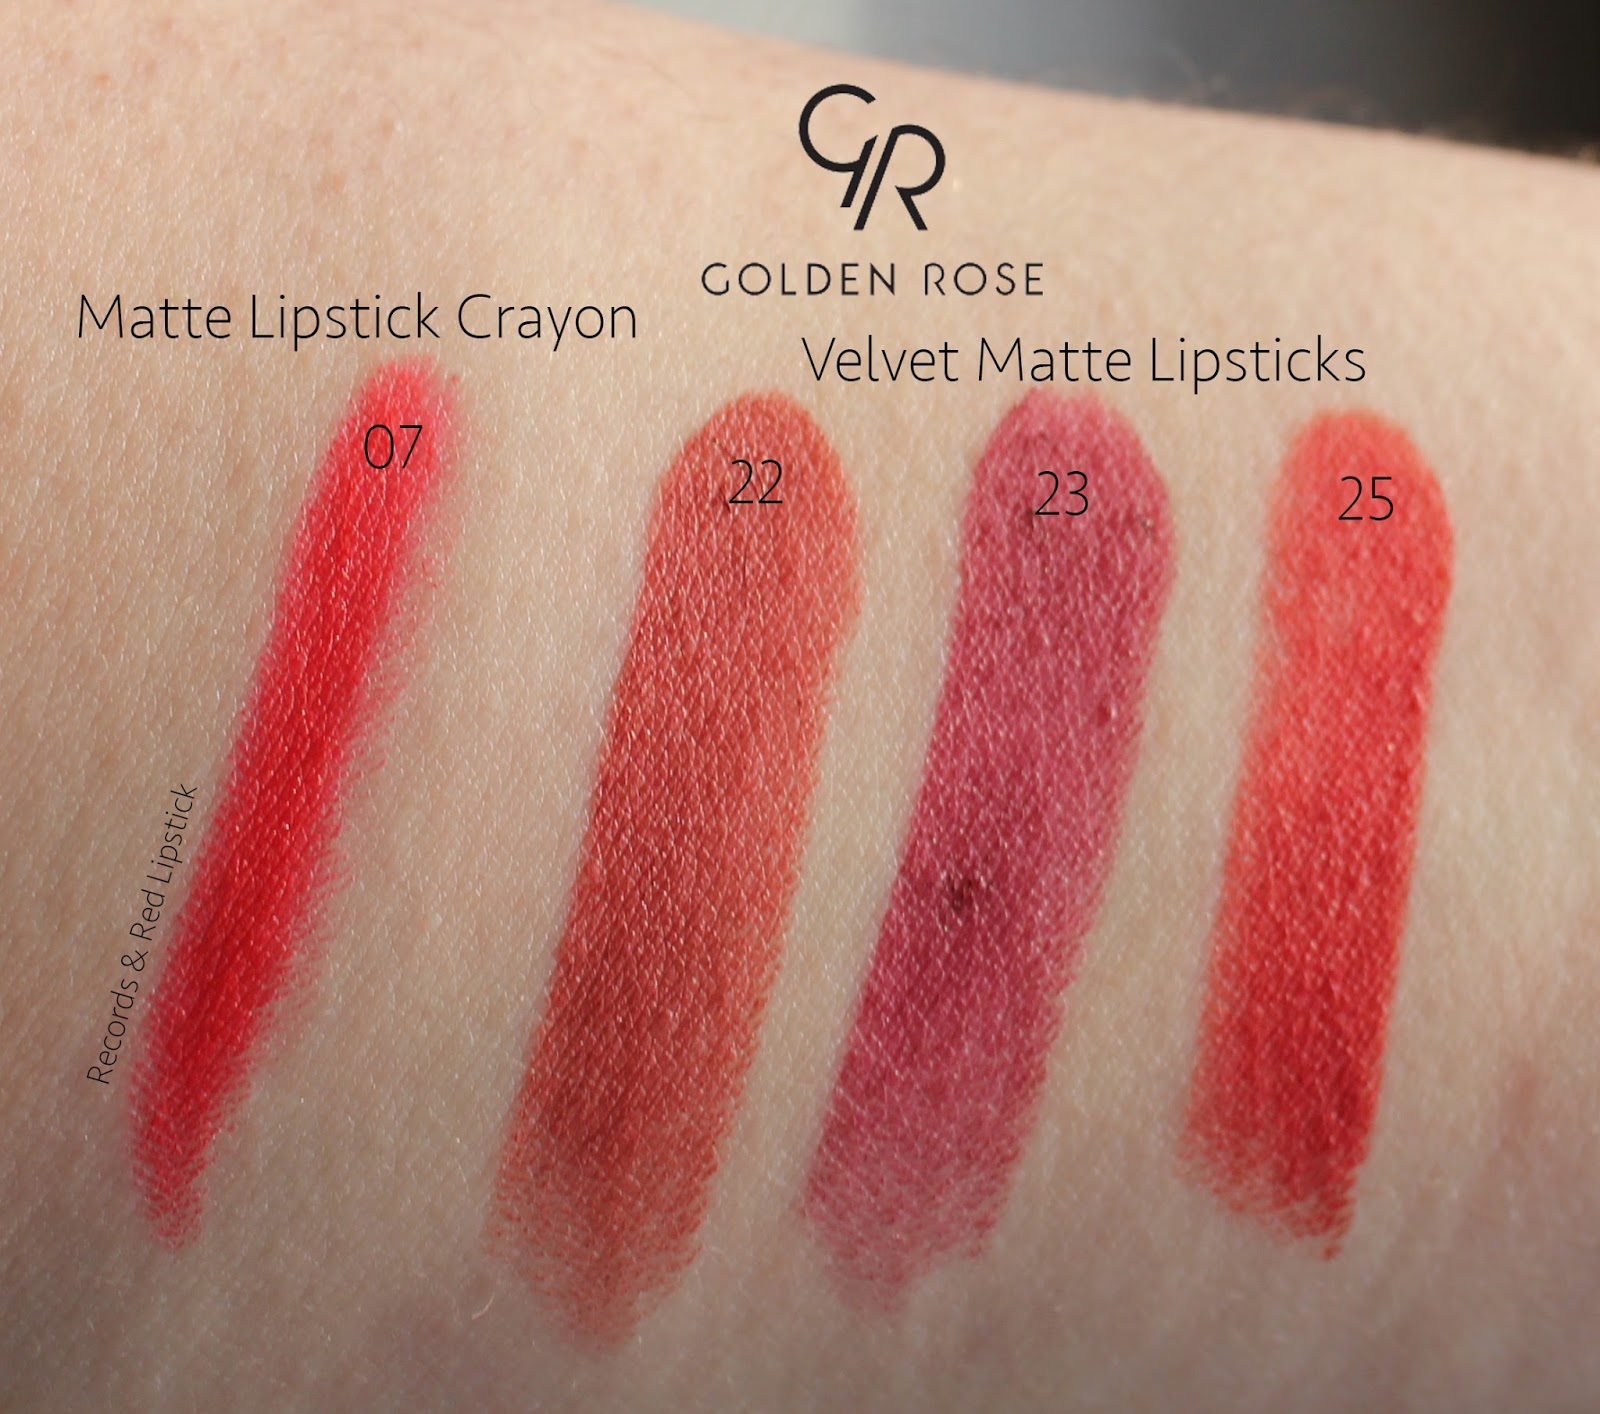 Golden Rose Velvet Matte Lipstick Swatches & Review